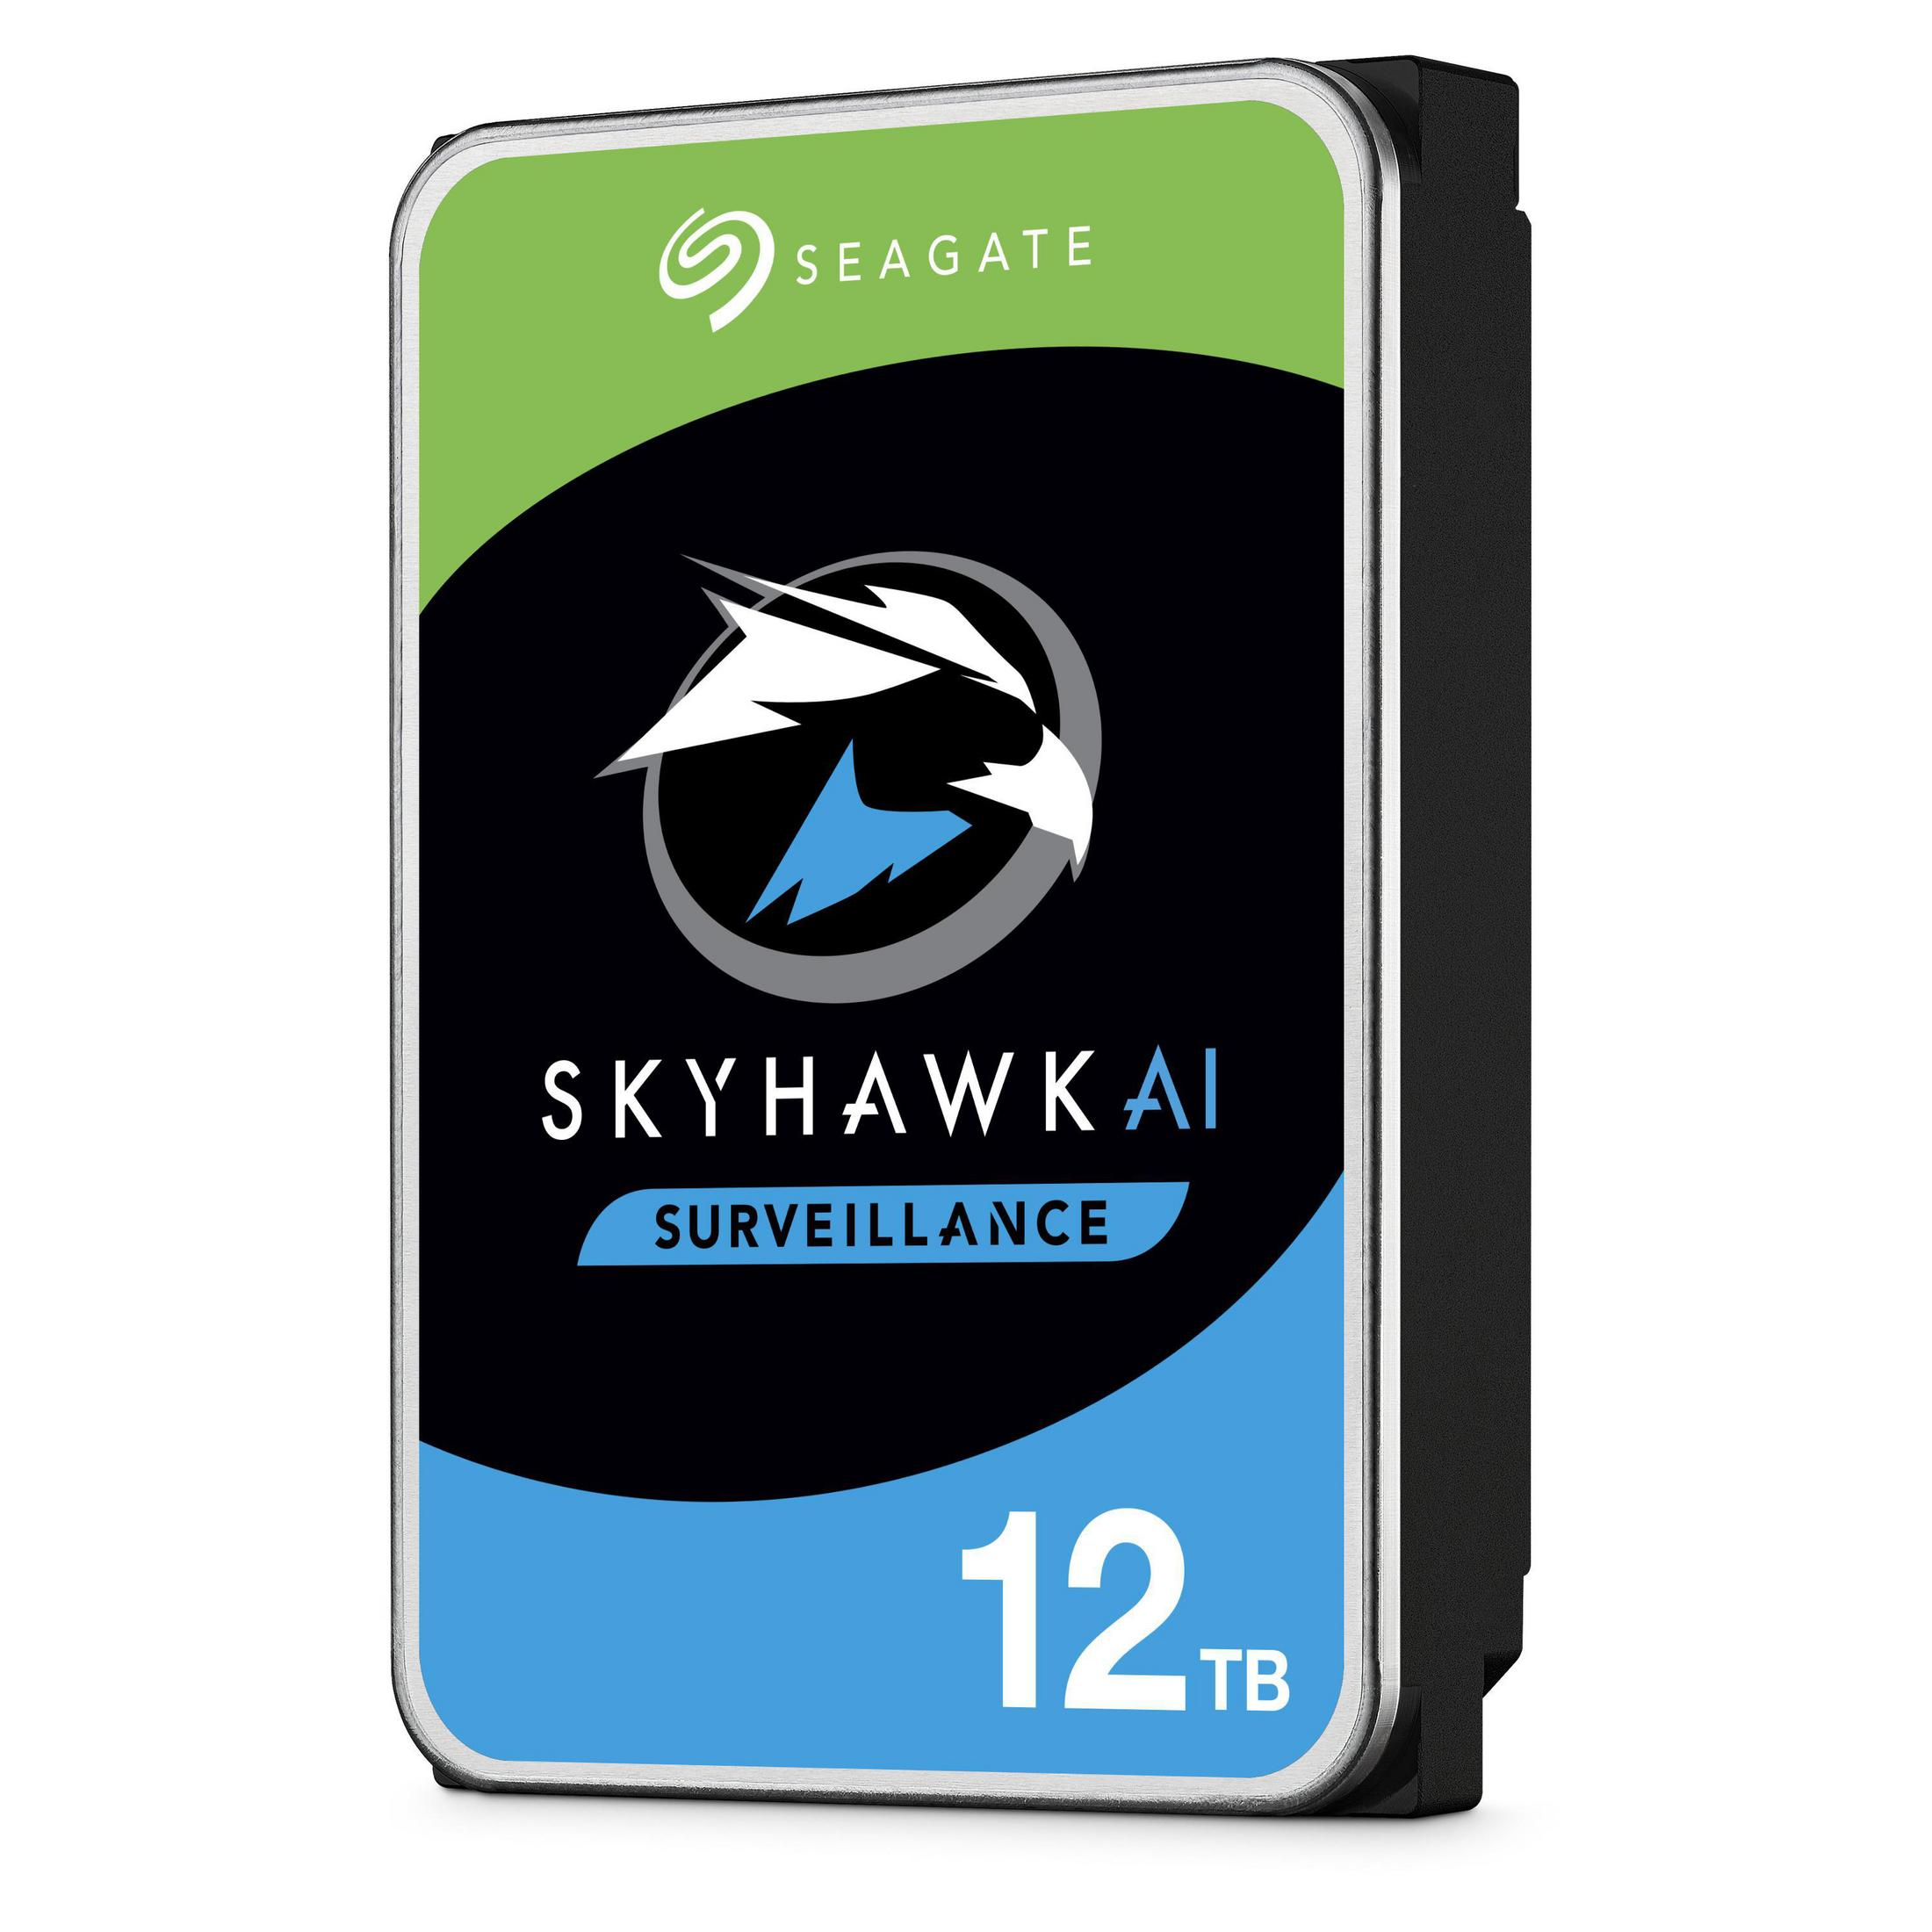 SEAGATE SkyHawk AI, GB, 12000 intern HDD, 3,5 Zoll